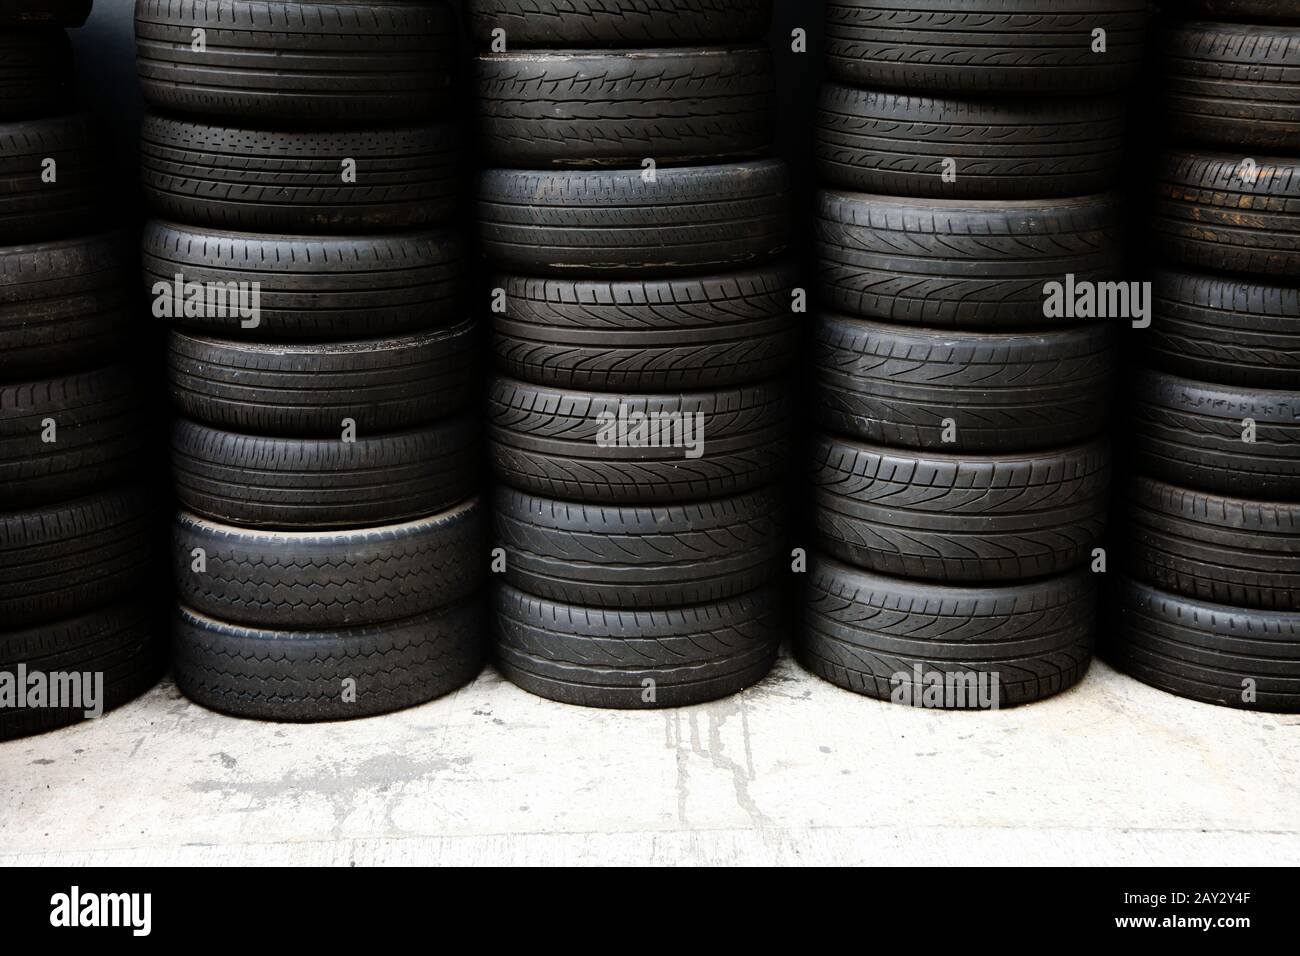 Lagerung voller neuer Reifen Aufräumen durch Säulen & Reihen in einer Garage Stockfoto